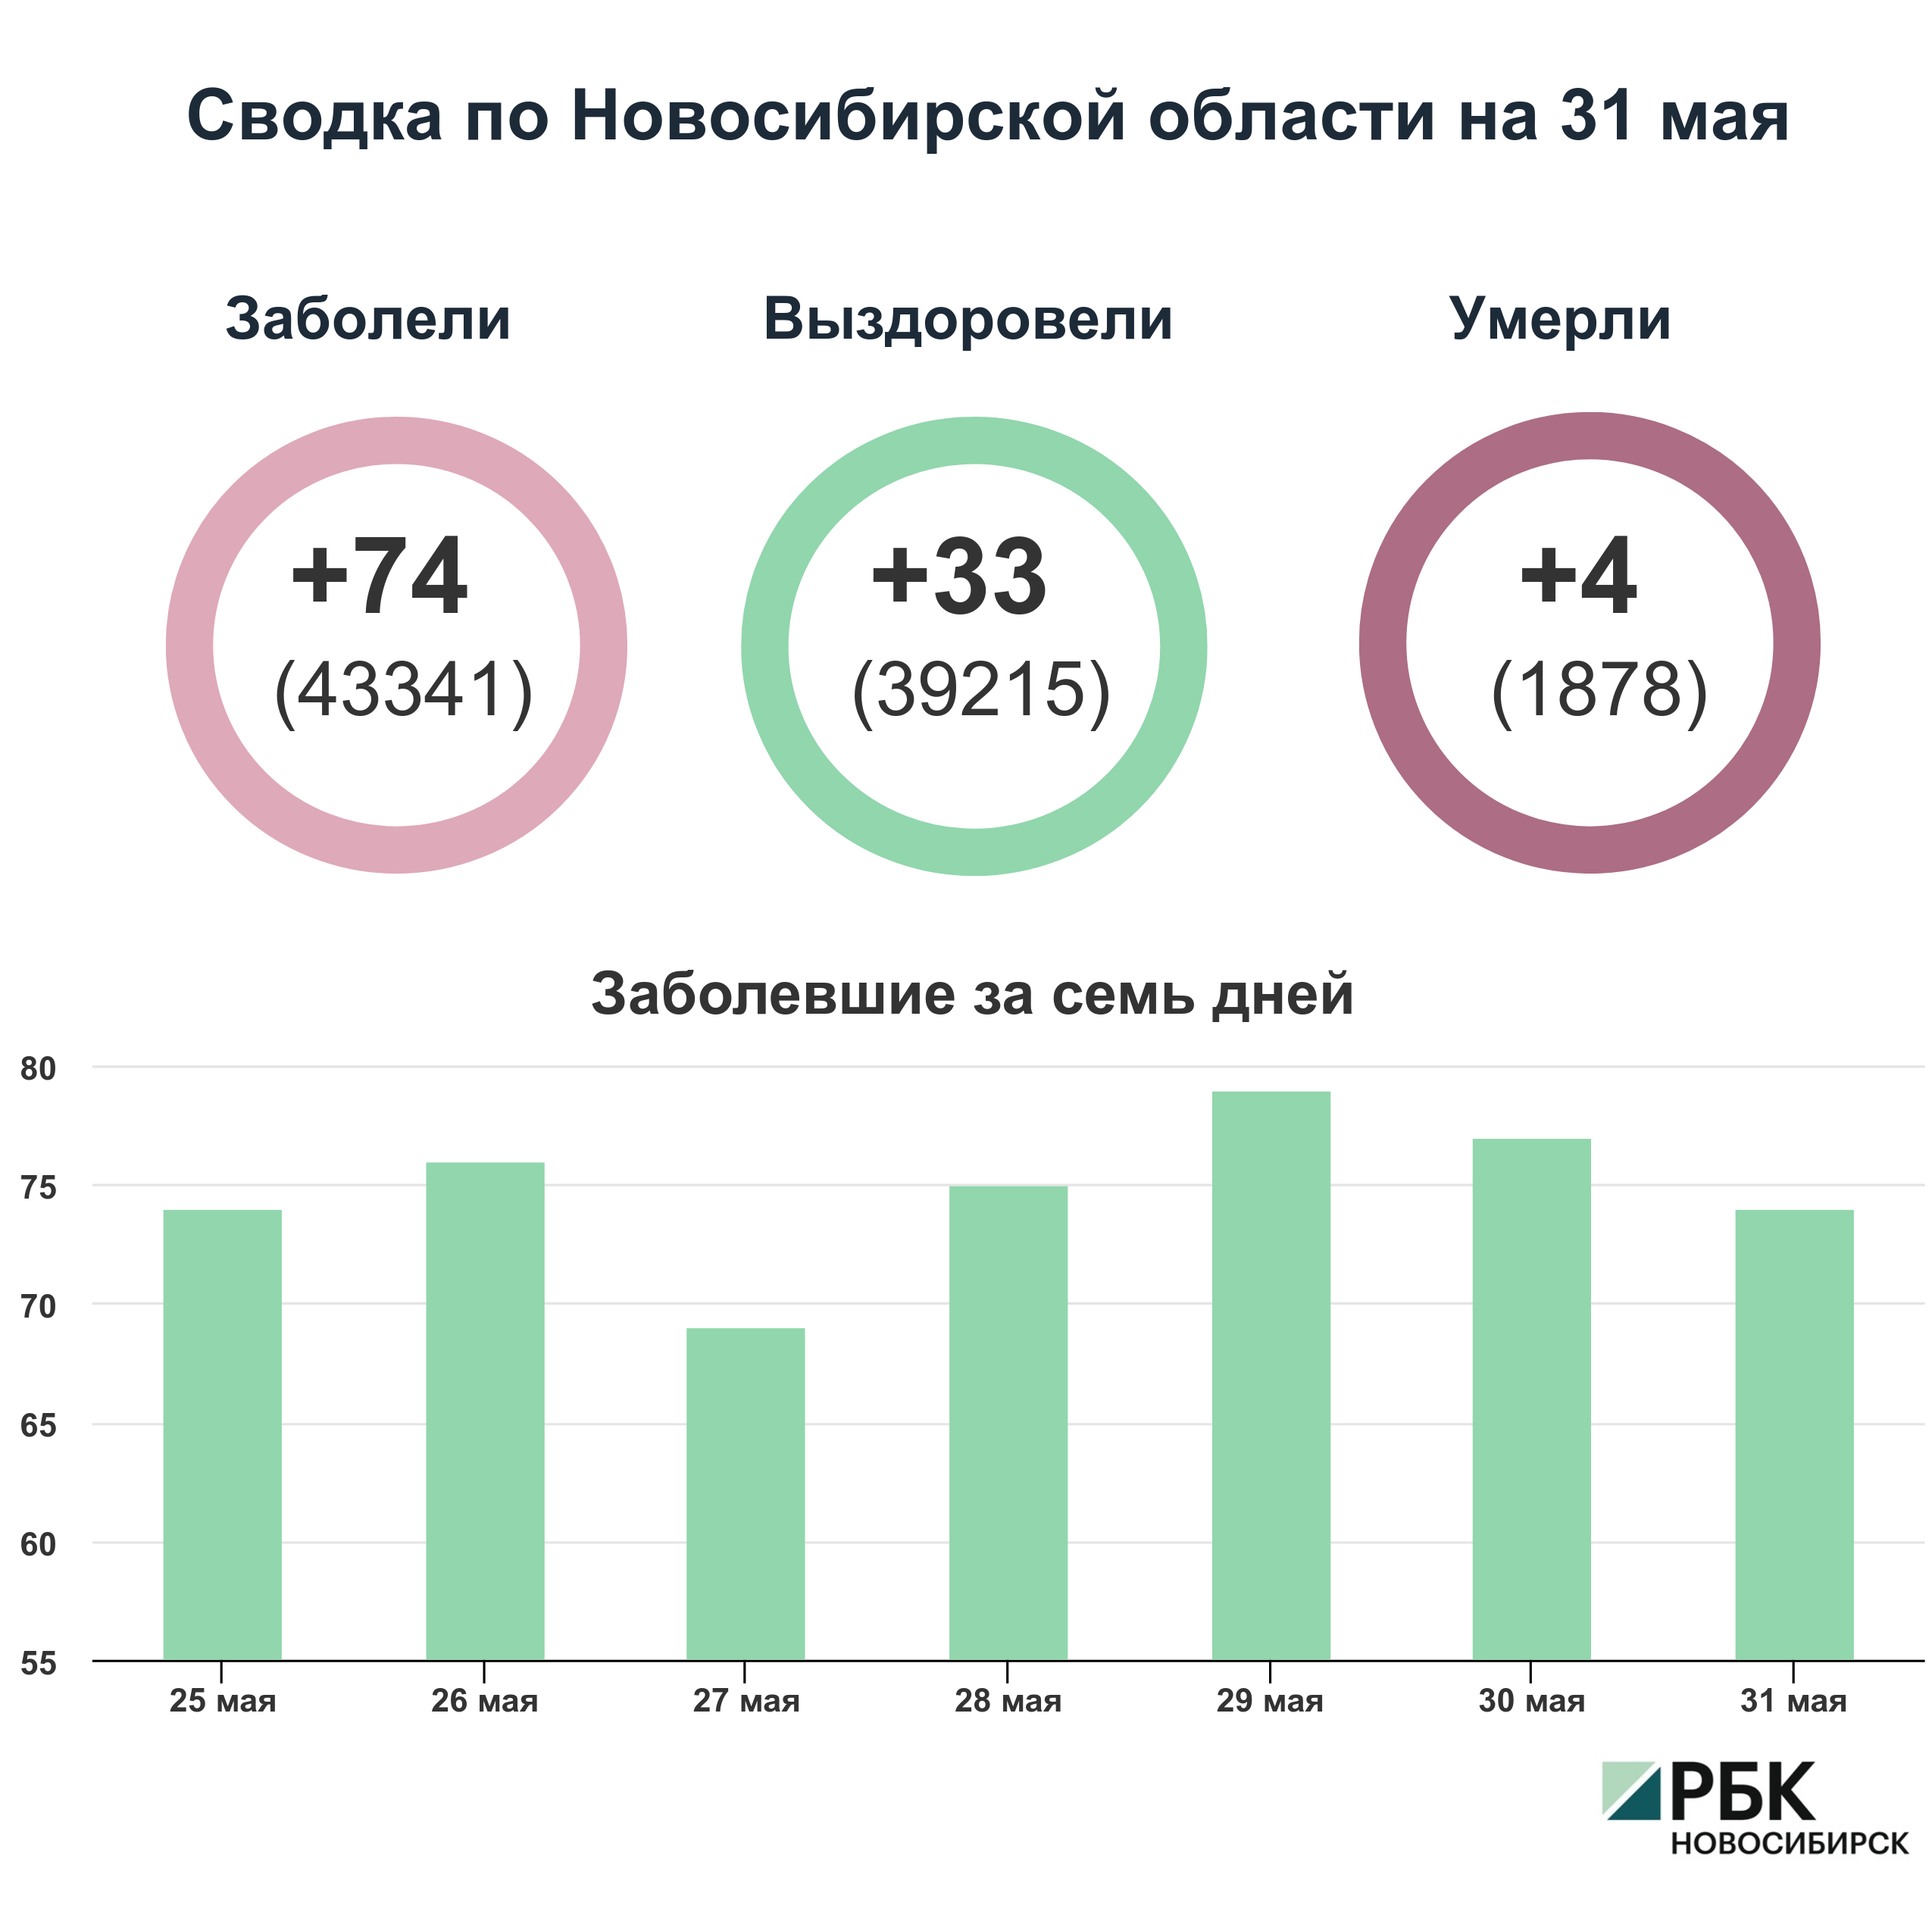 Коронавирус в Новосибирске: сводка на 31 мая